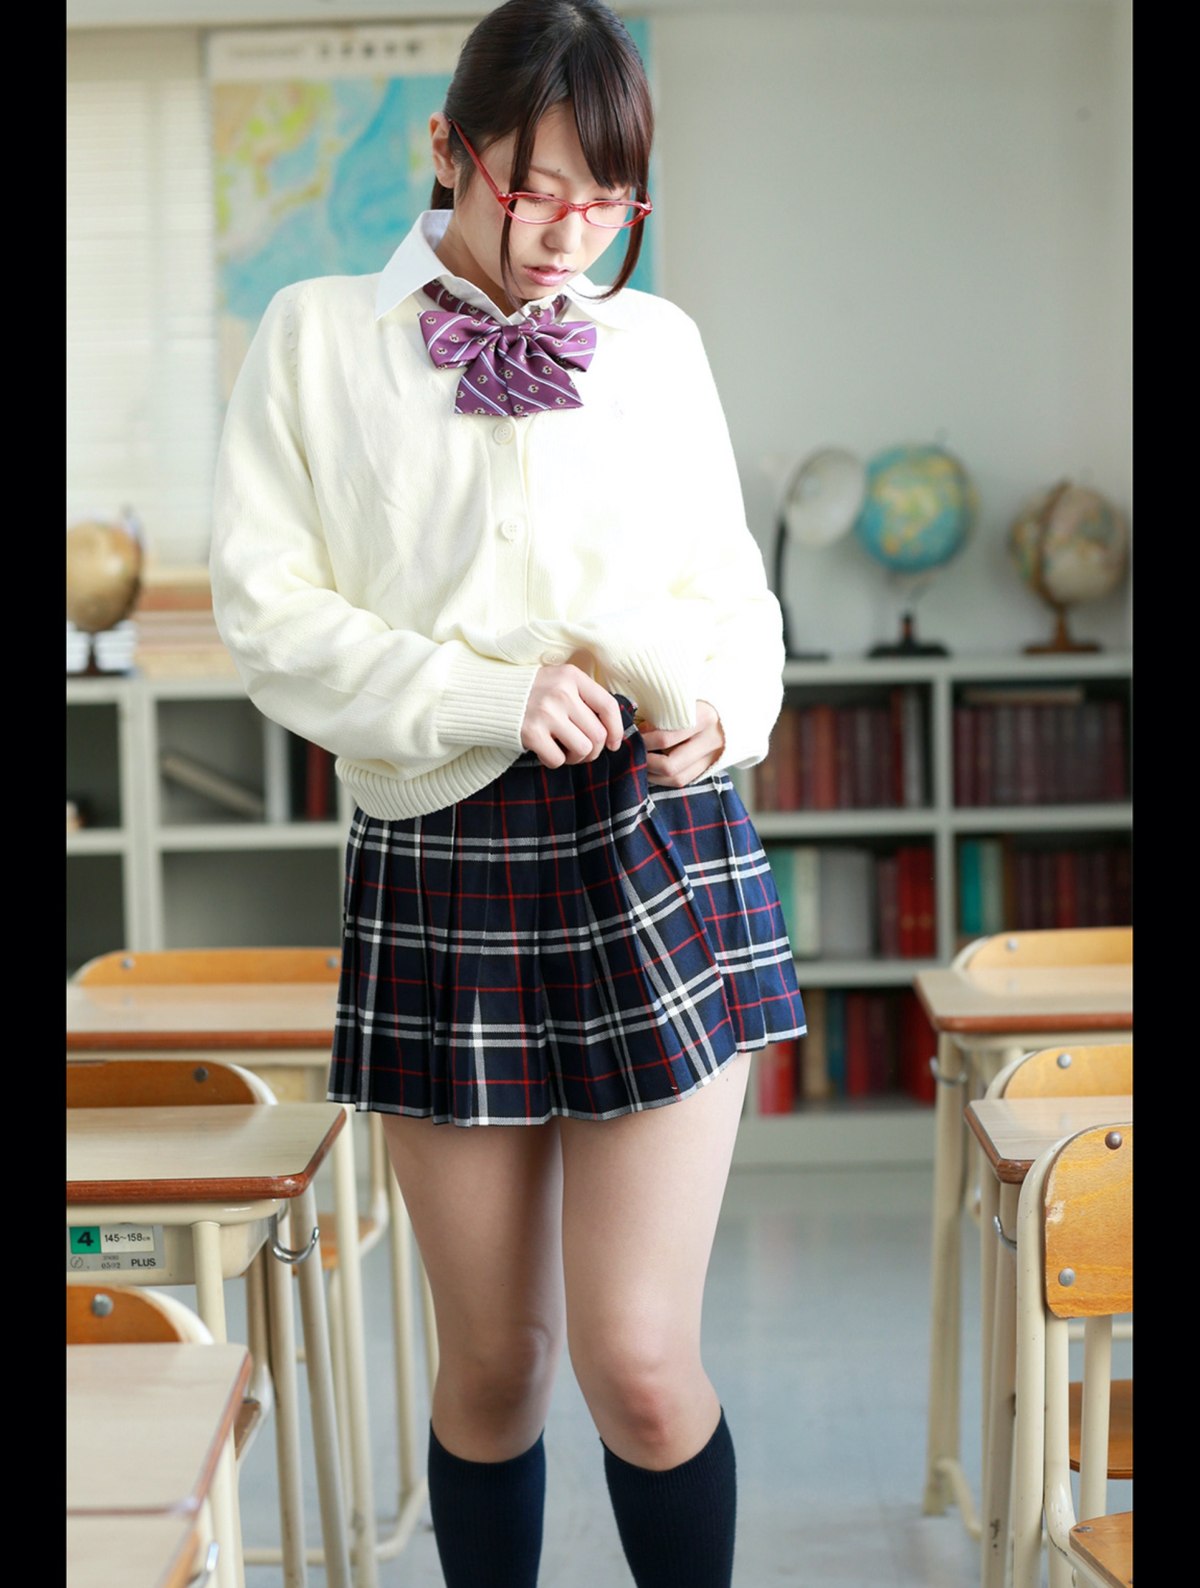 Photobook 2013 10 18 Chika Arimura 有村千佳 Ikenaikoto In The Classroom 0034 1484629196.jpg